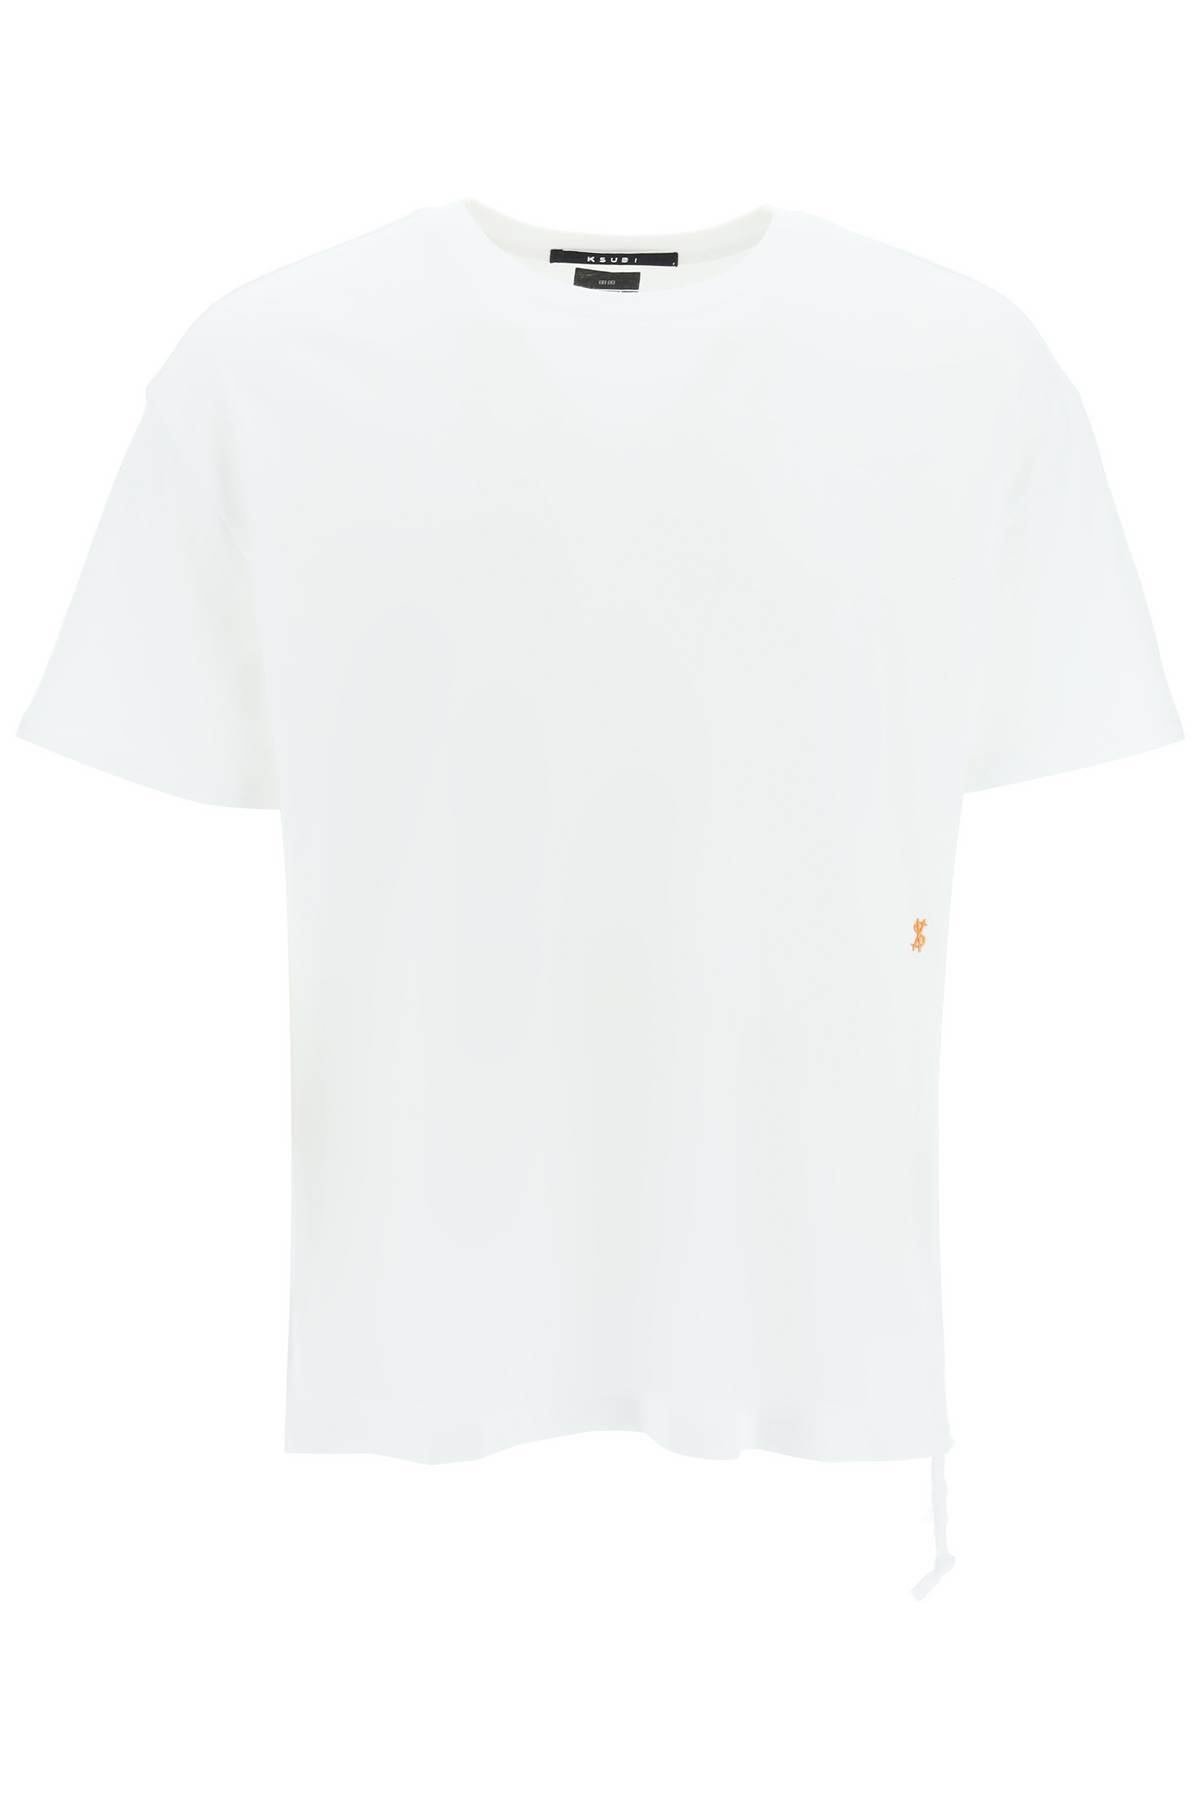 KSUBI KSUBI '4 x 4 biggie' t-shirt